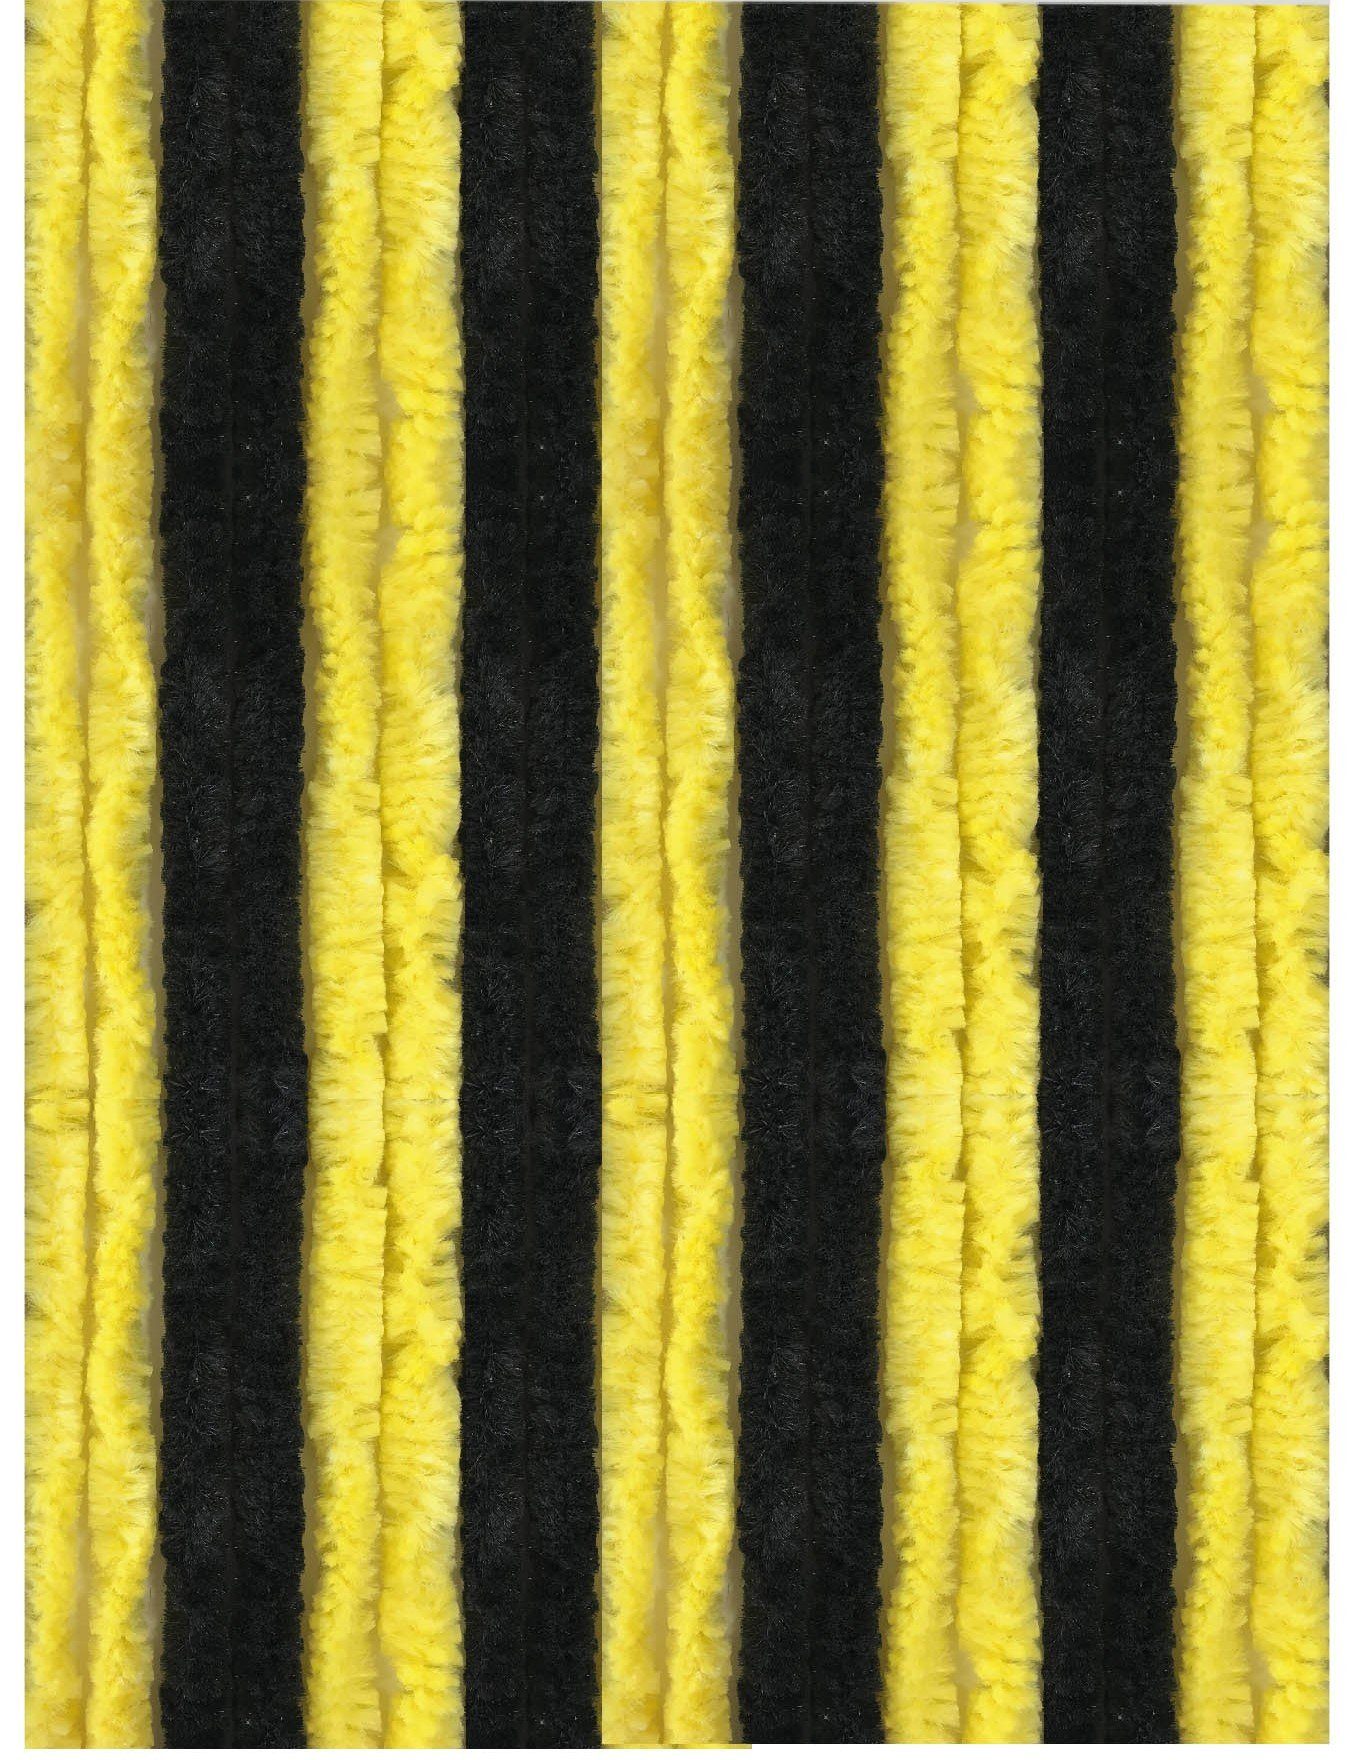 Türvorhang Flausch, Arsvita, Ösen (1 St), blickdicht, Flauschvorhang 100x220cm (BxL), perfekter Insekten- und Sichtschutz, viele versch. Farben verfügbar Schwarz - Gelb